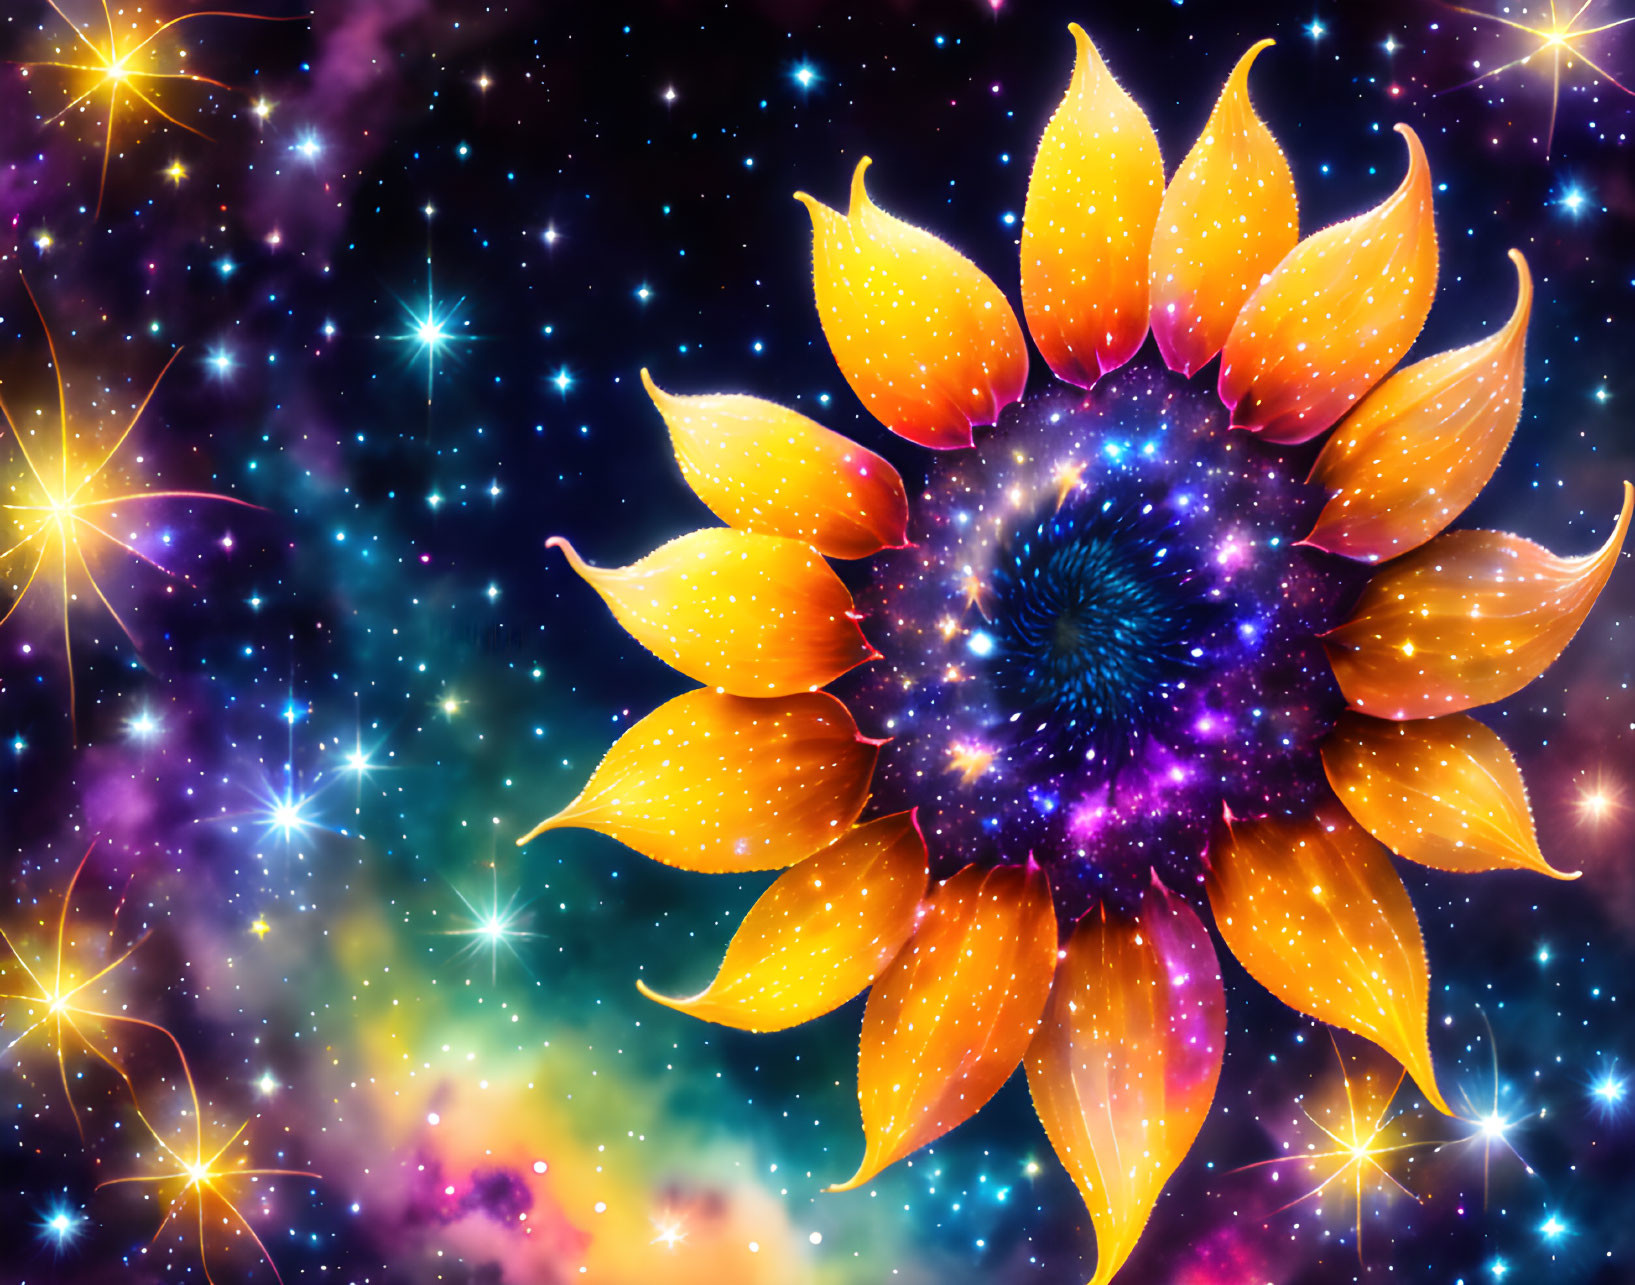  Starlit Sunflower